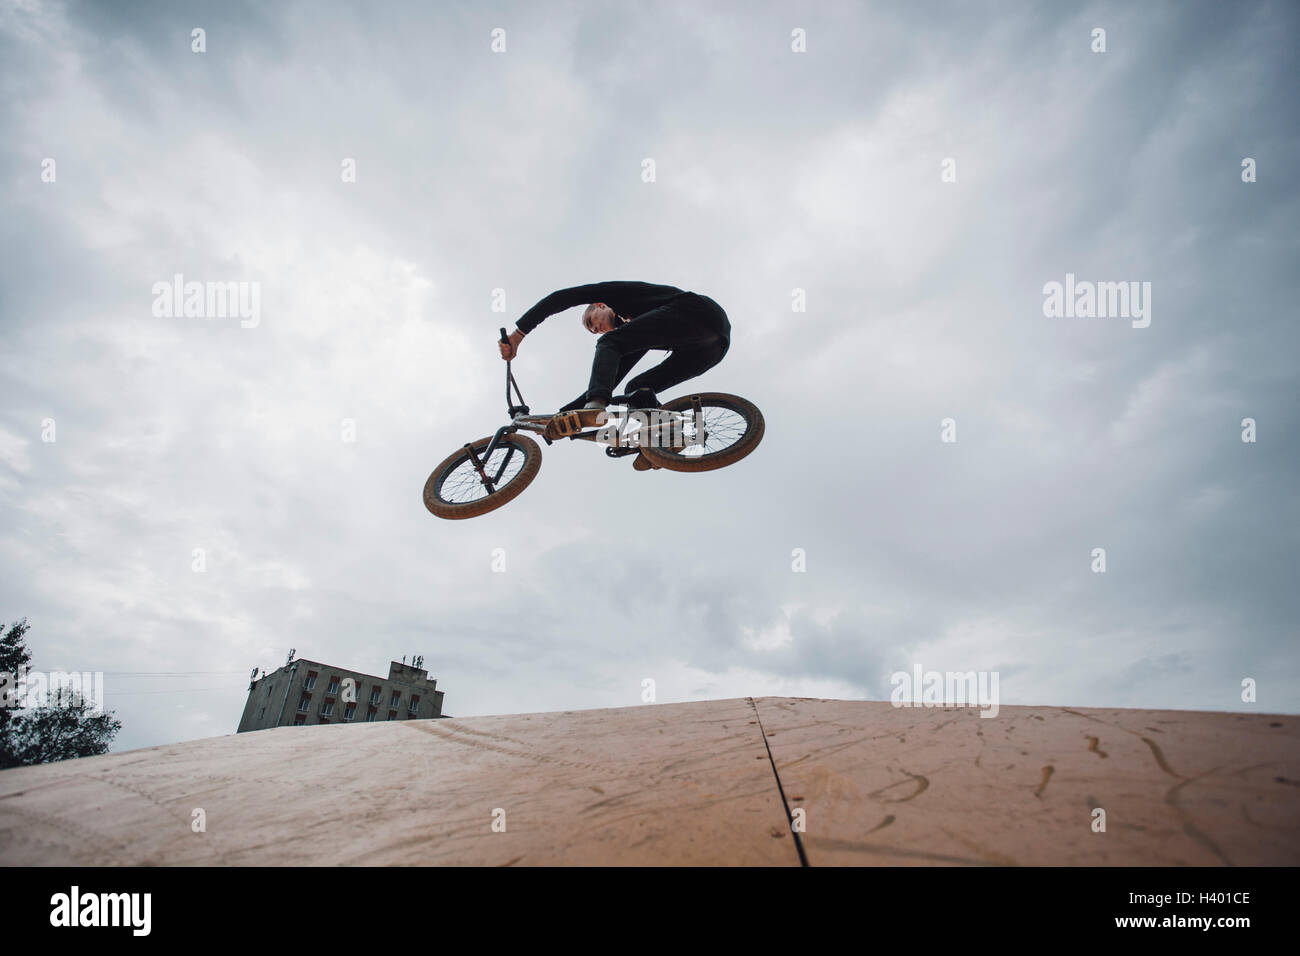 Basso angolo vista di adolescente eseguendo acrobazie durante la BMX ciclismo contro il cielo nuvoloso Foto Stock